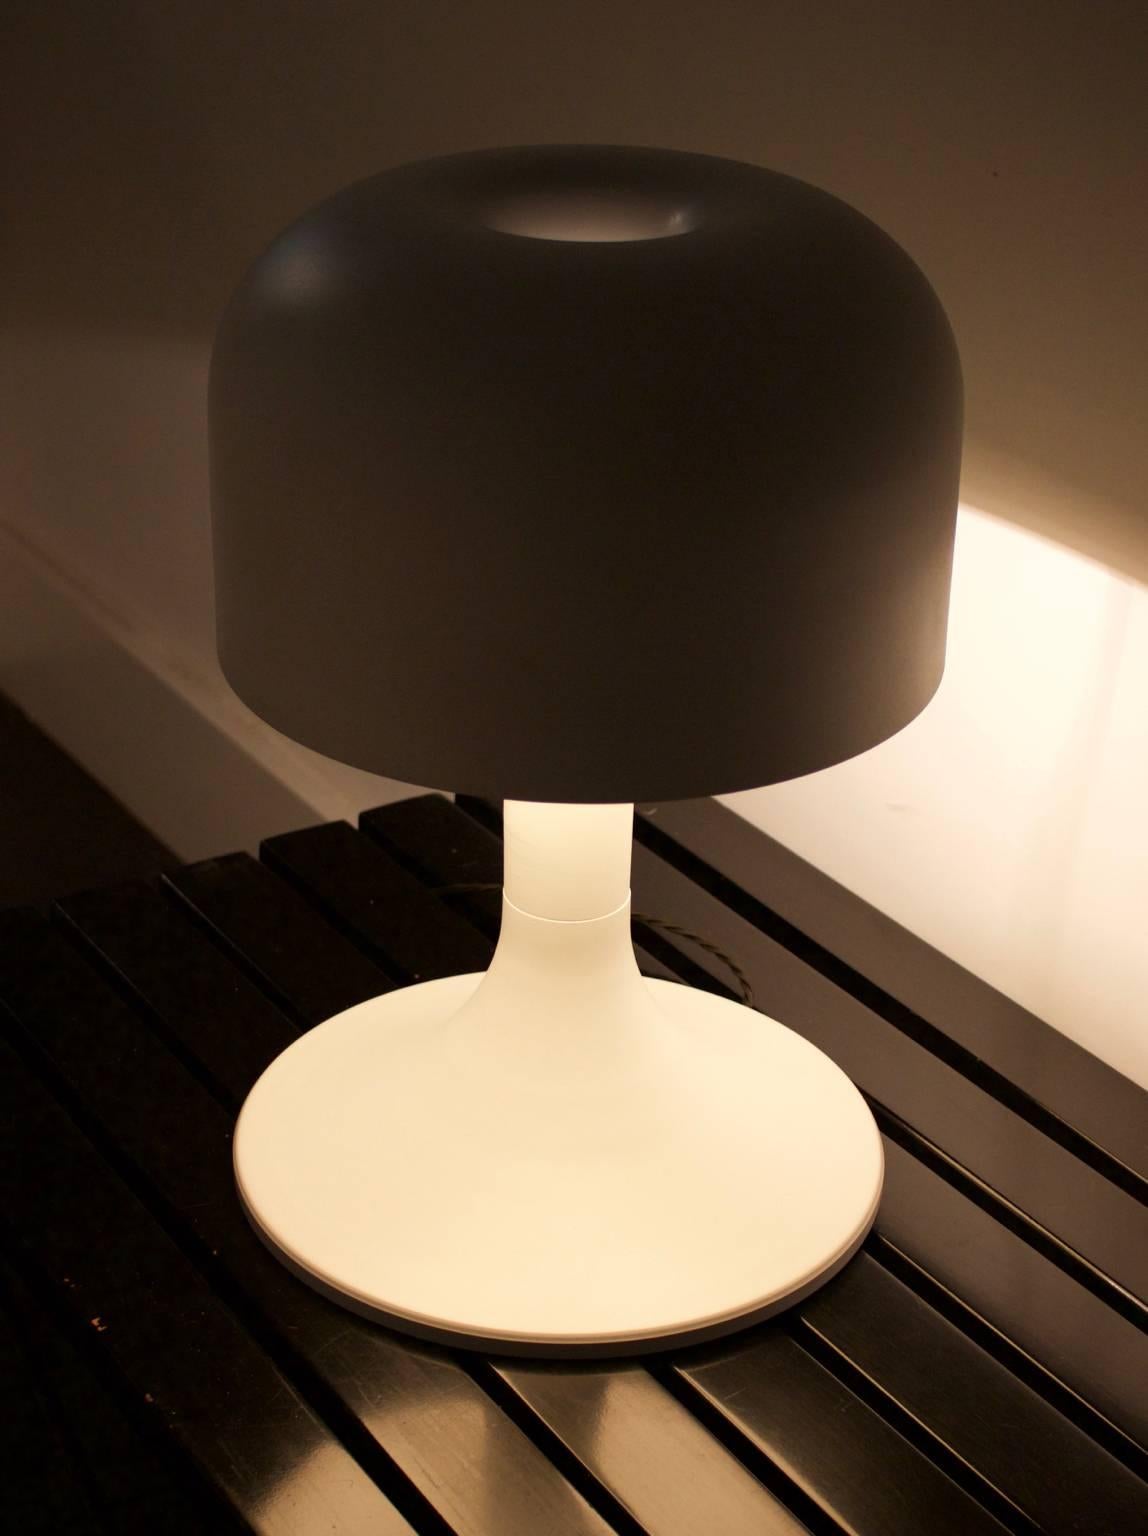 20th Century Mushroom Table Lamp with Spun Aluminium Shade